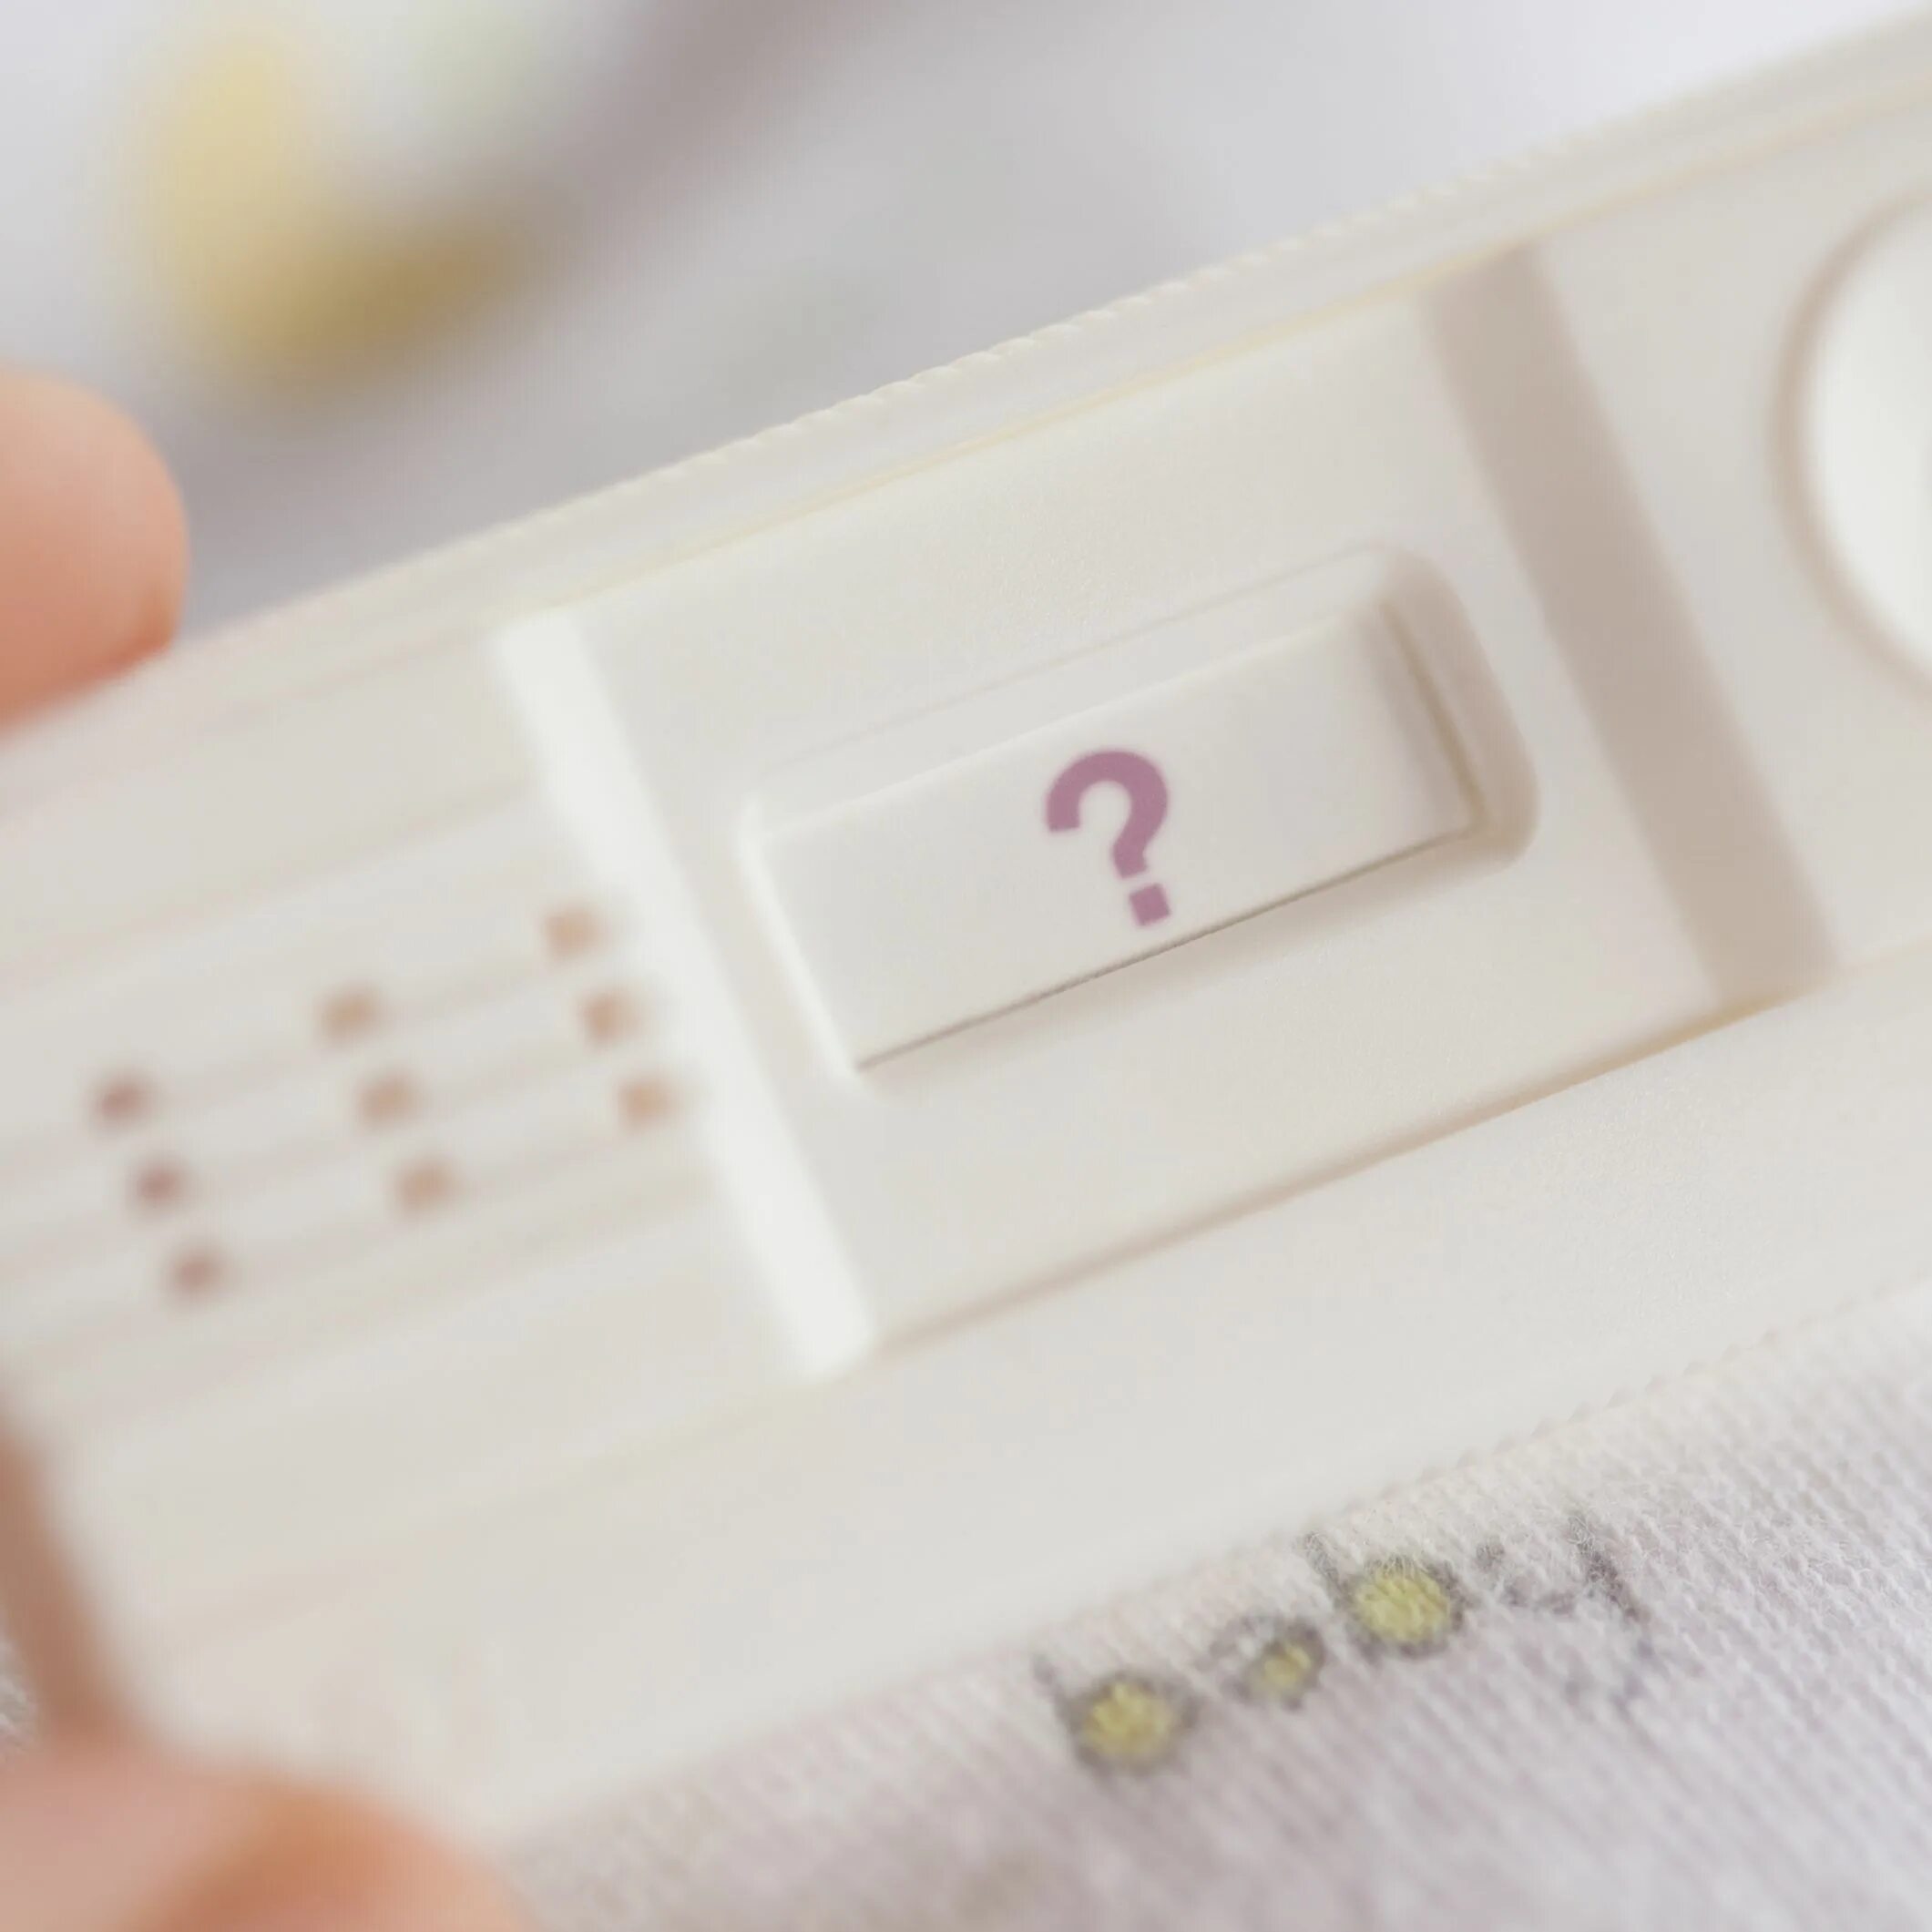 Месячные 2 дня вместо 5. Задержка месячных 13 дней причины. Беременность отрицательном тесте. Тест на беременность со знаком вопроса. Задержка месячных на фоне стресса сколько может длиться.